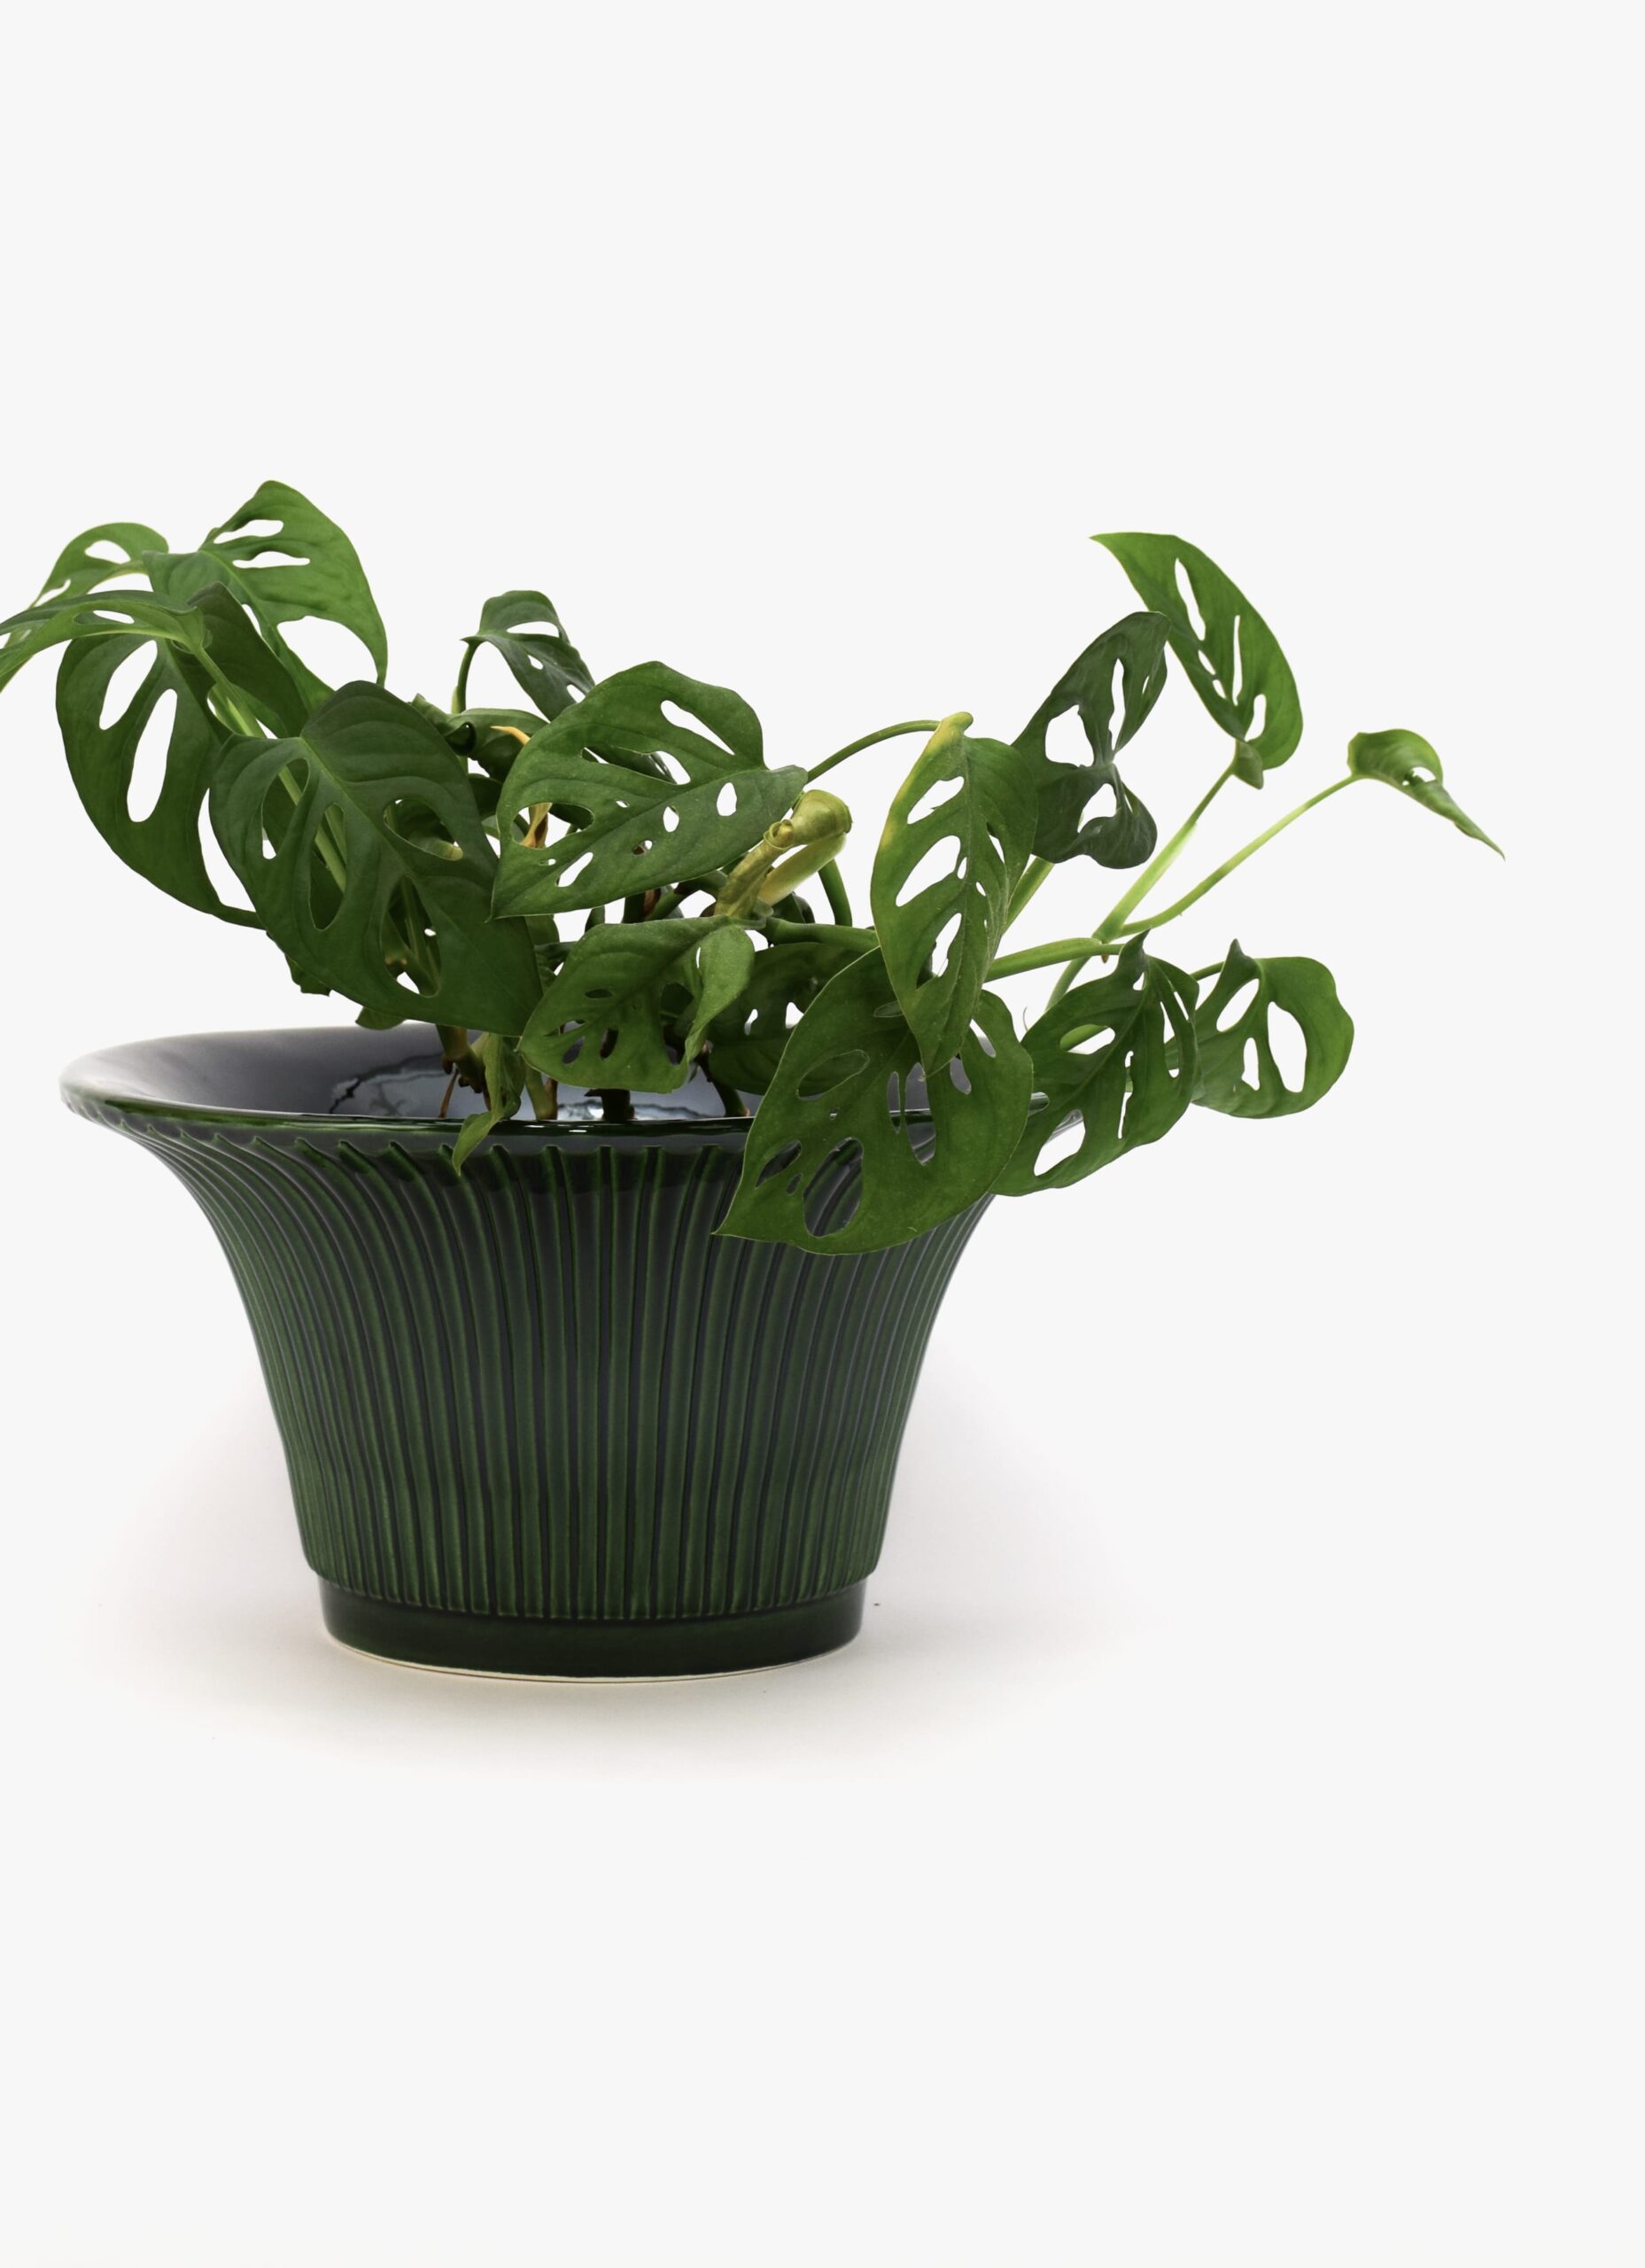 Bergs Potter - Plant Pot Daisy - Emerald Green - D30xH16cm